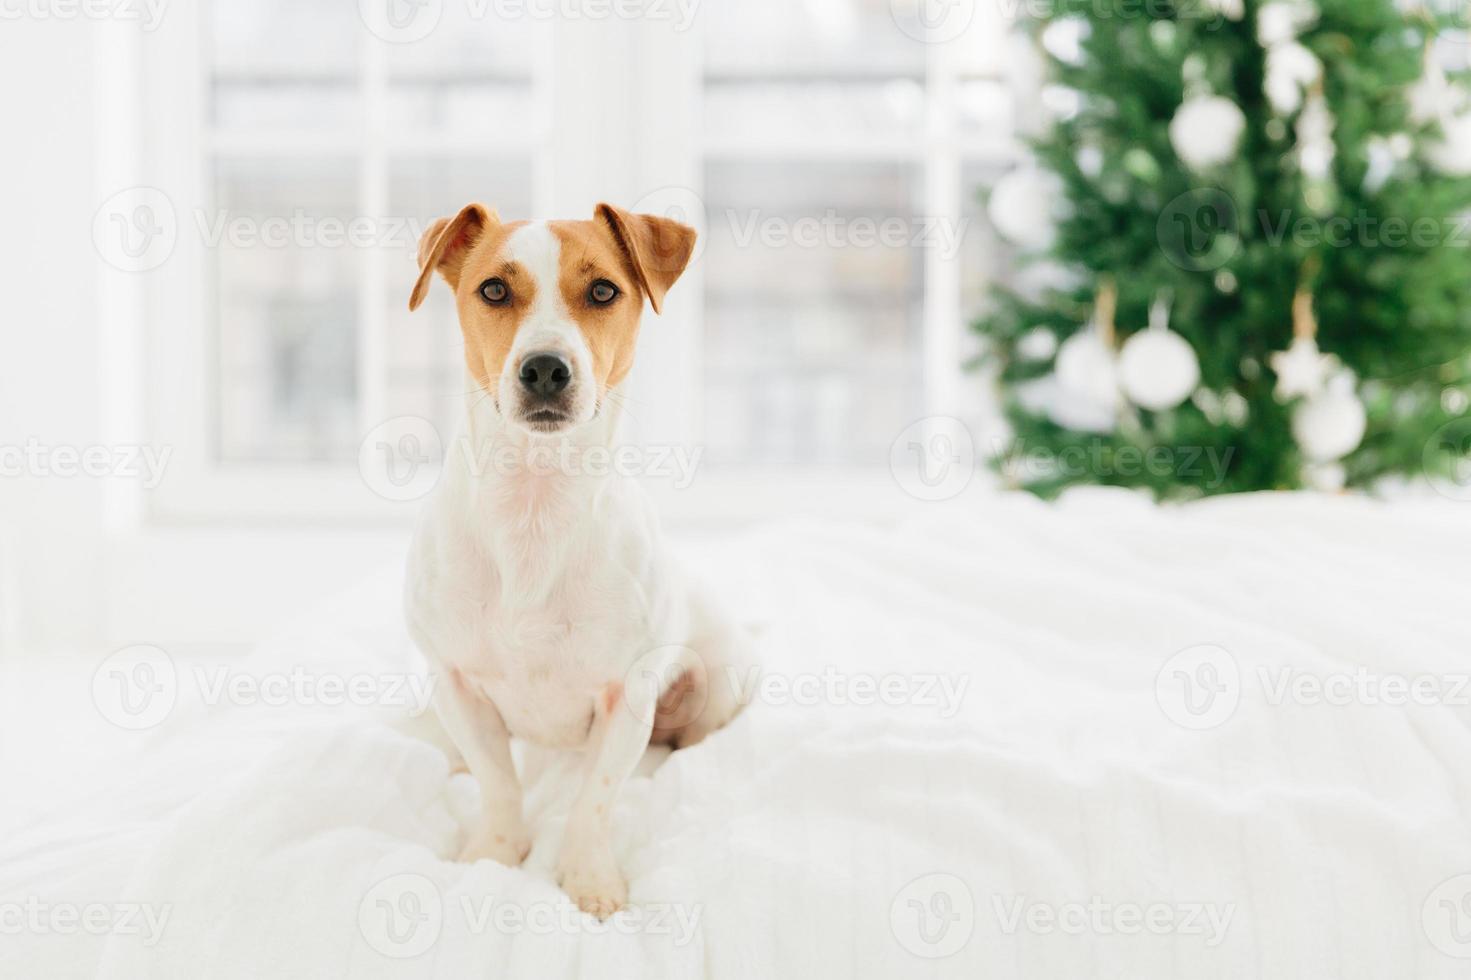 El perro pedigrí jack russell terrier posa en la cama contra un fondo borroso, el abeto simboliza las próximas vacaciones de invierno. animales, navidad, celebración de año nuevo foto